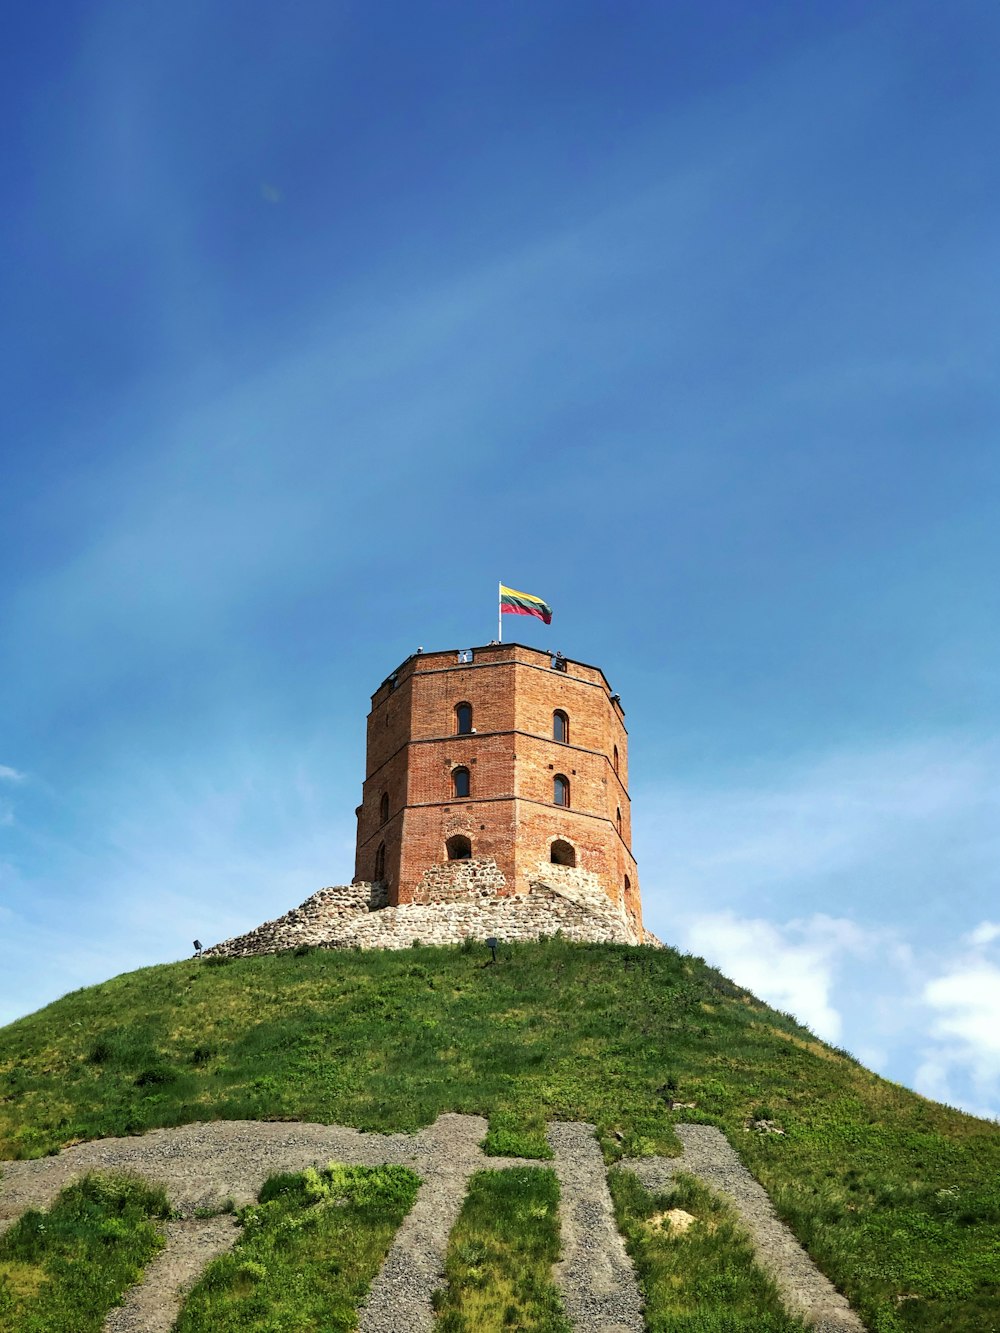 무성한 녹색 언덕 꼭대기에 앉아있는 높은 벽돌 탑